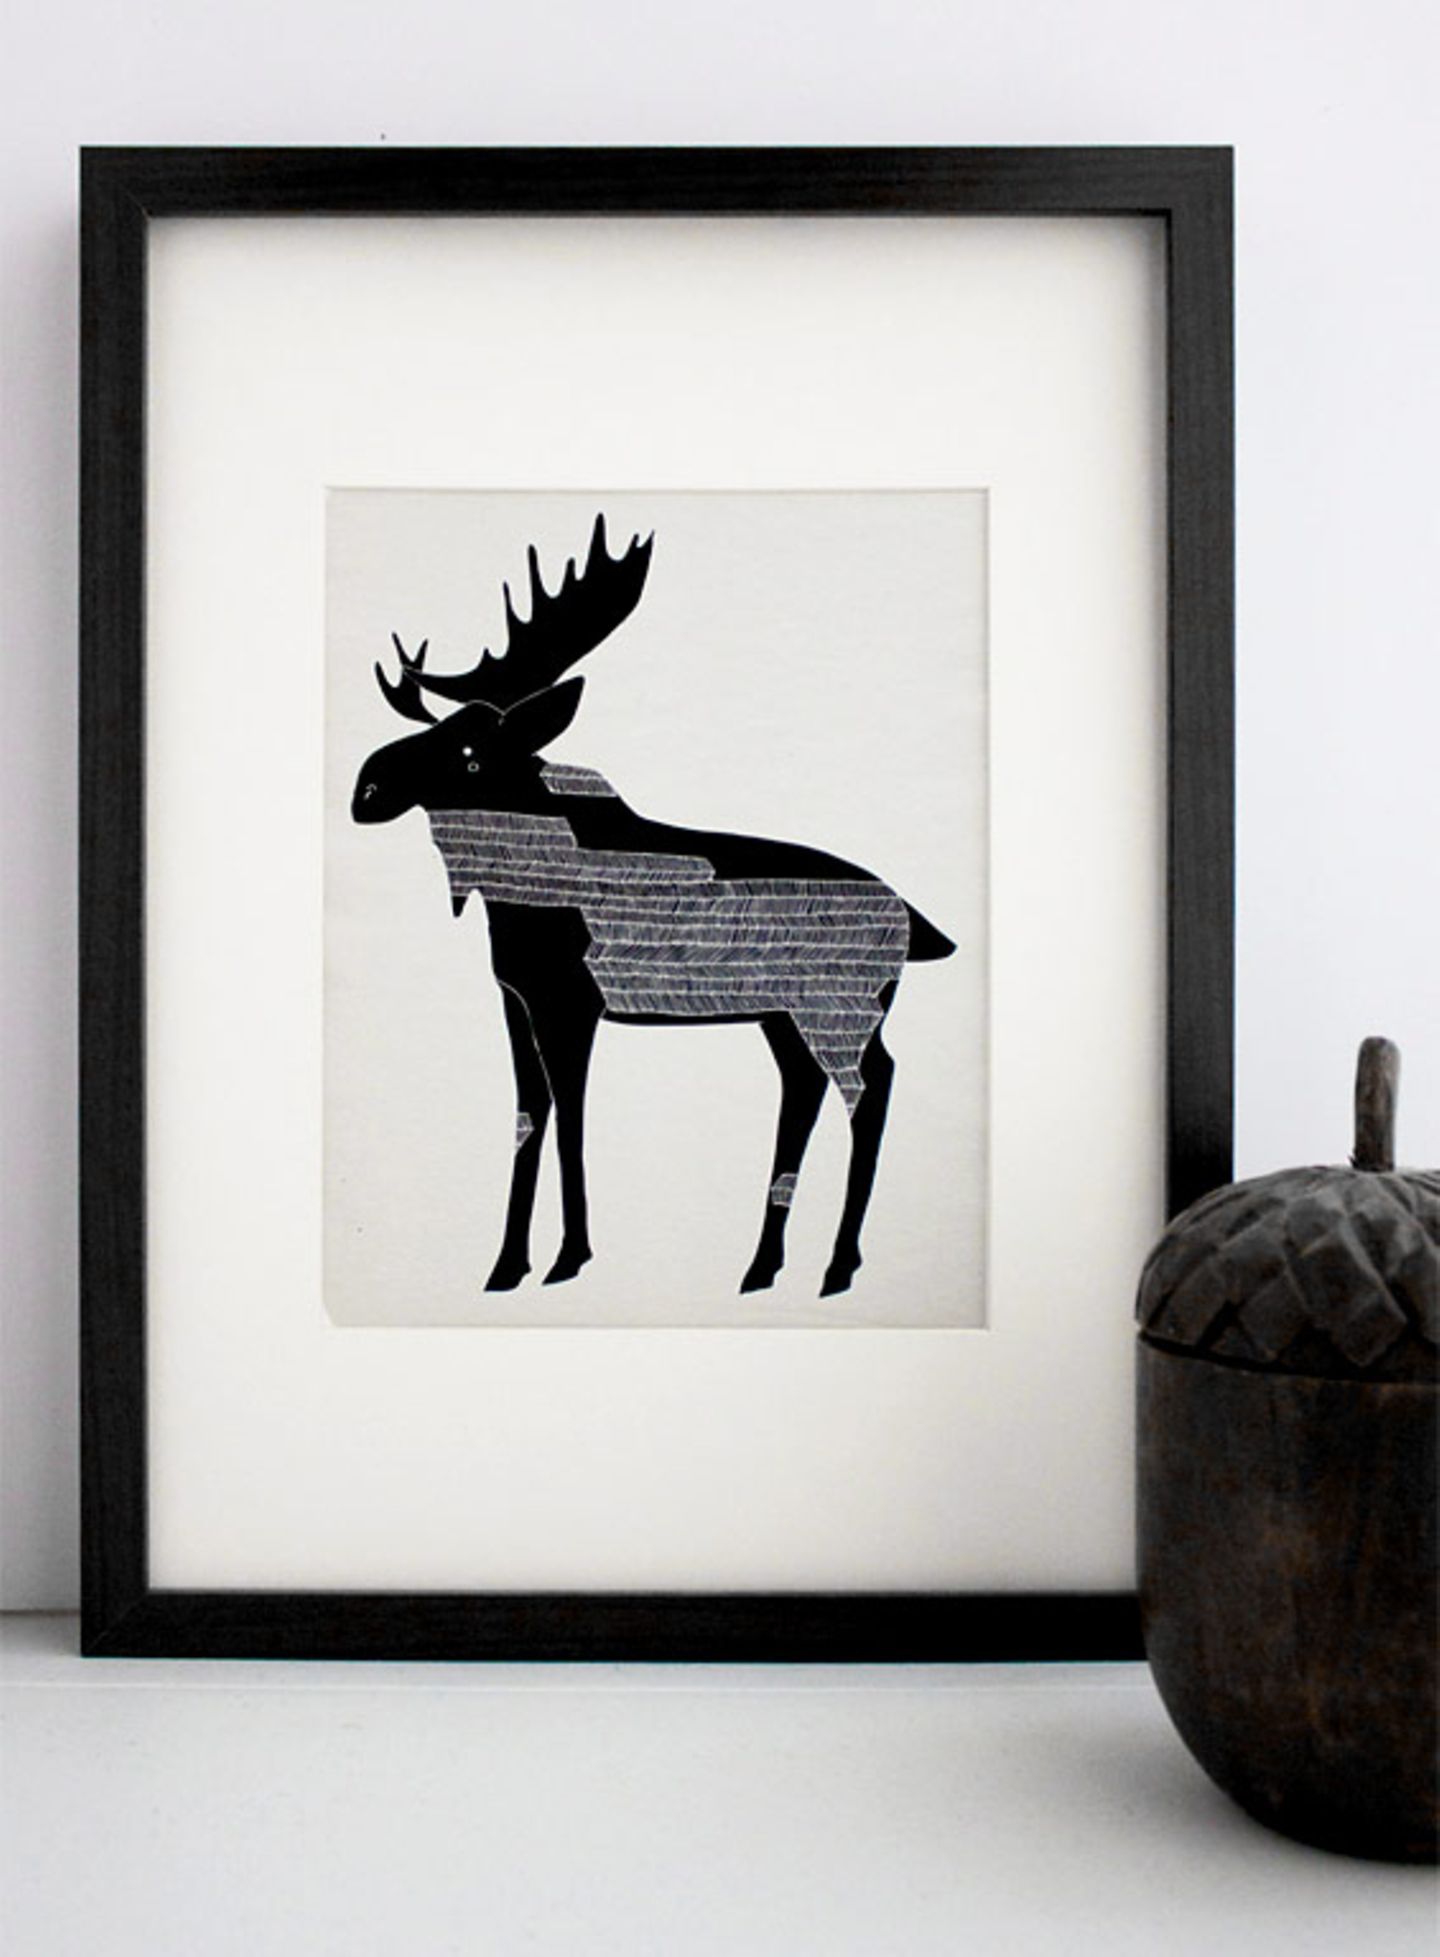 Nordisch: "Winter Moose" von Gingiber